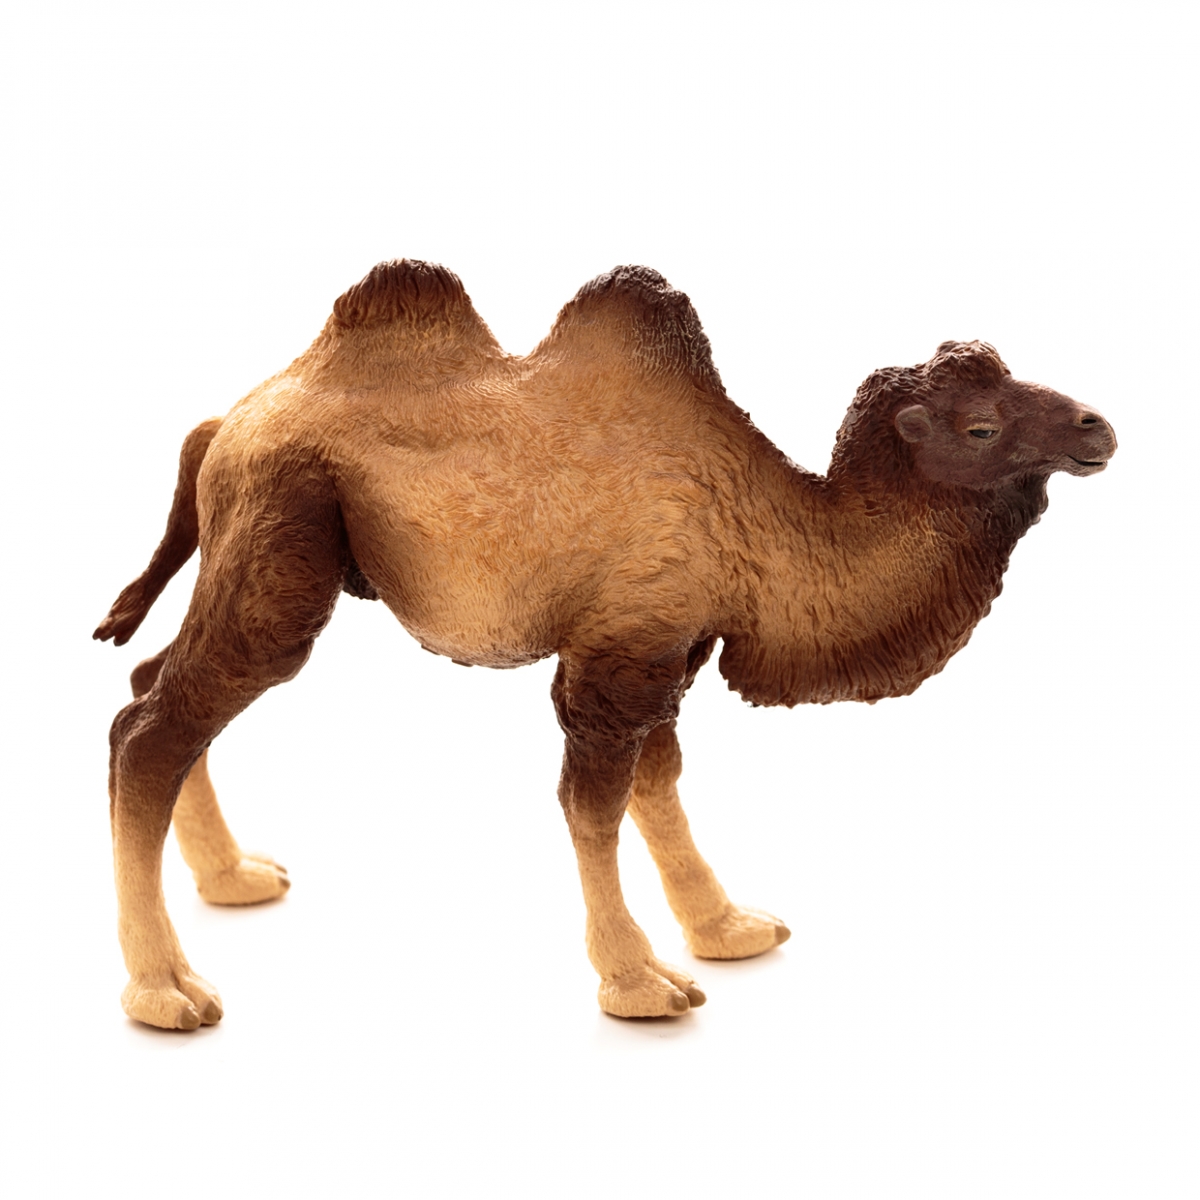 Imagen en la que se ve a un camello